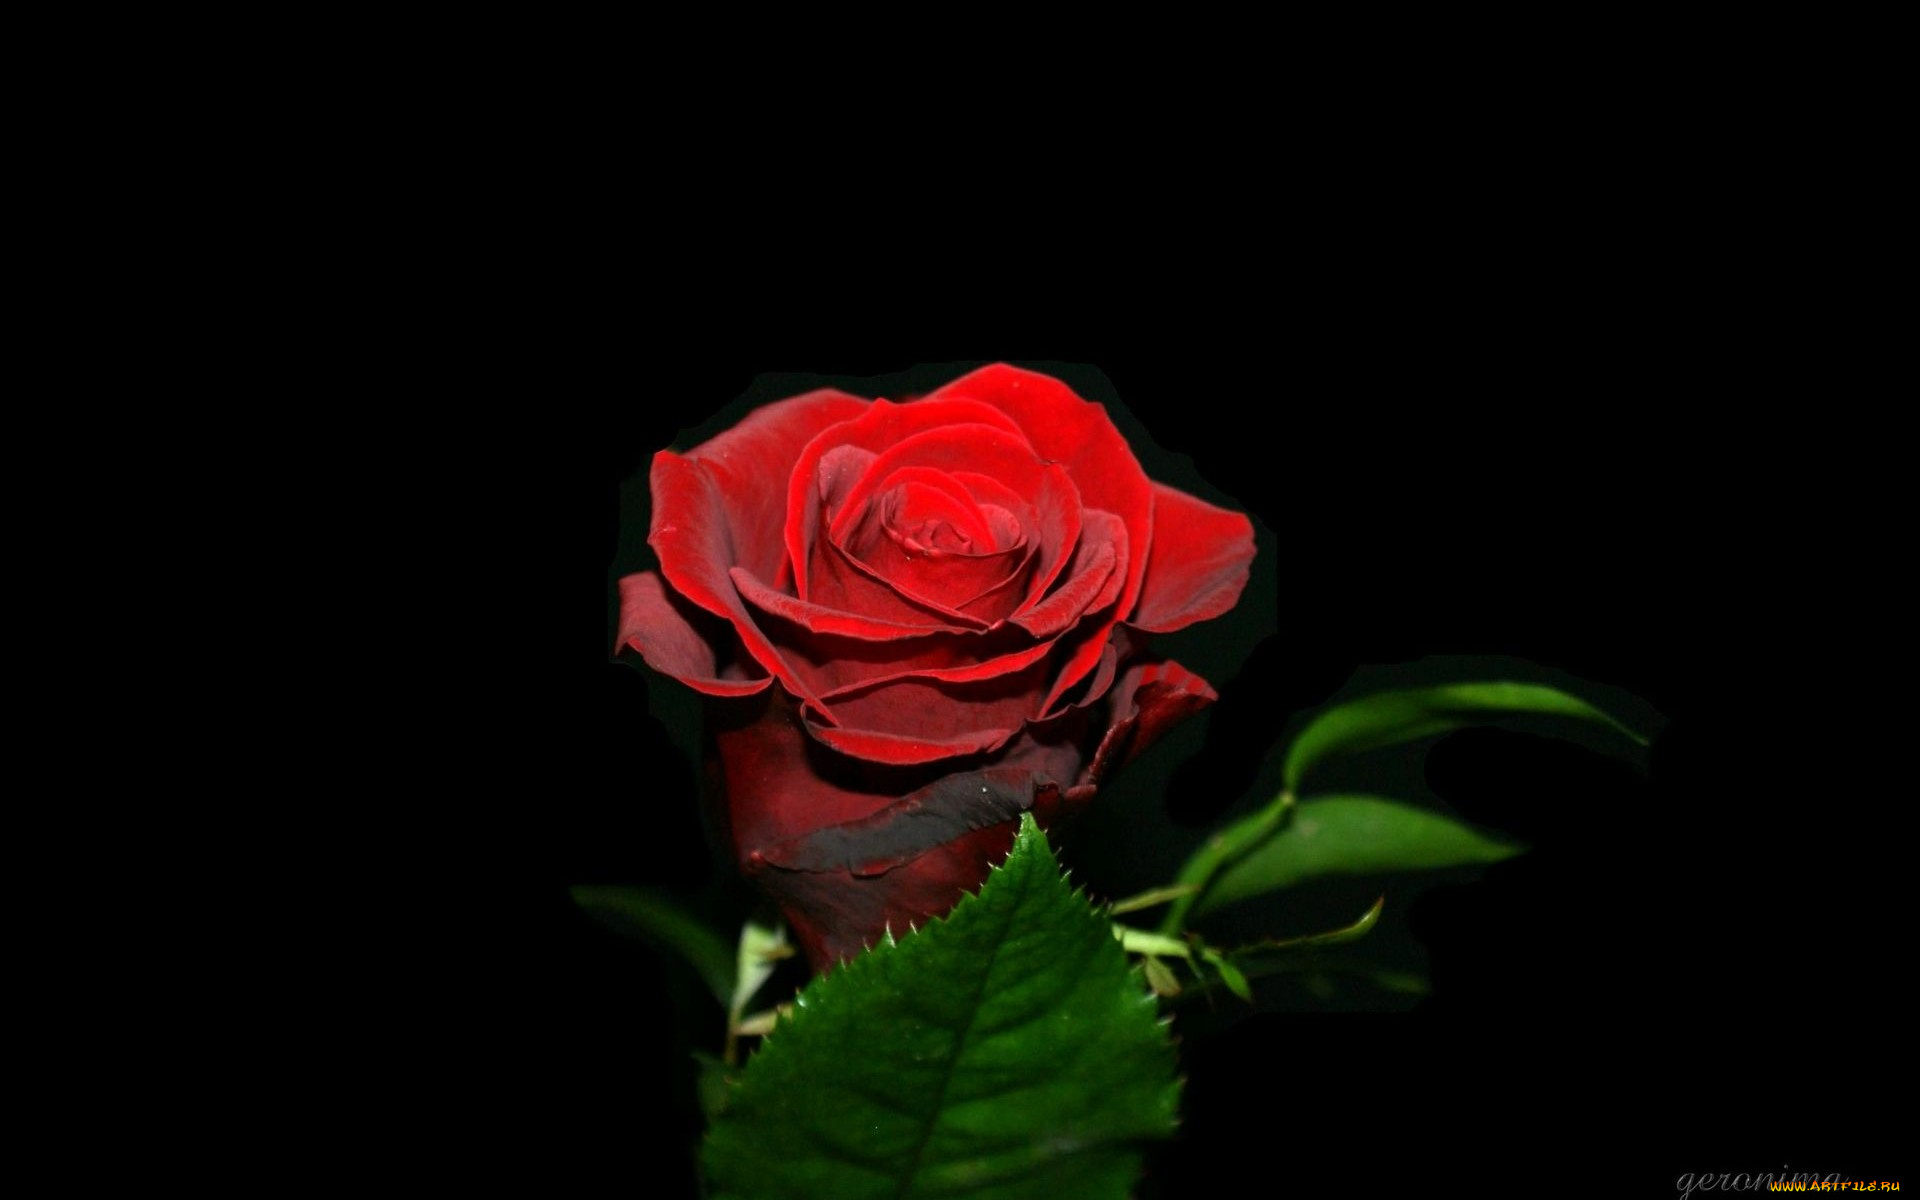 автор, geronima, цветы, розы, красный